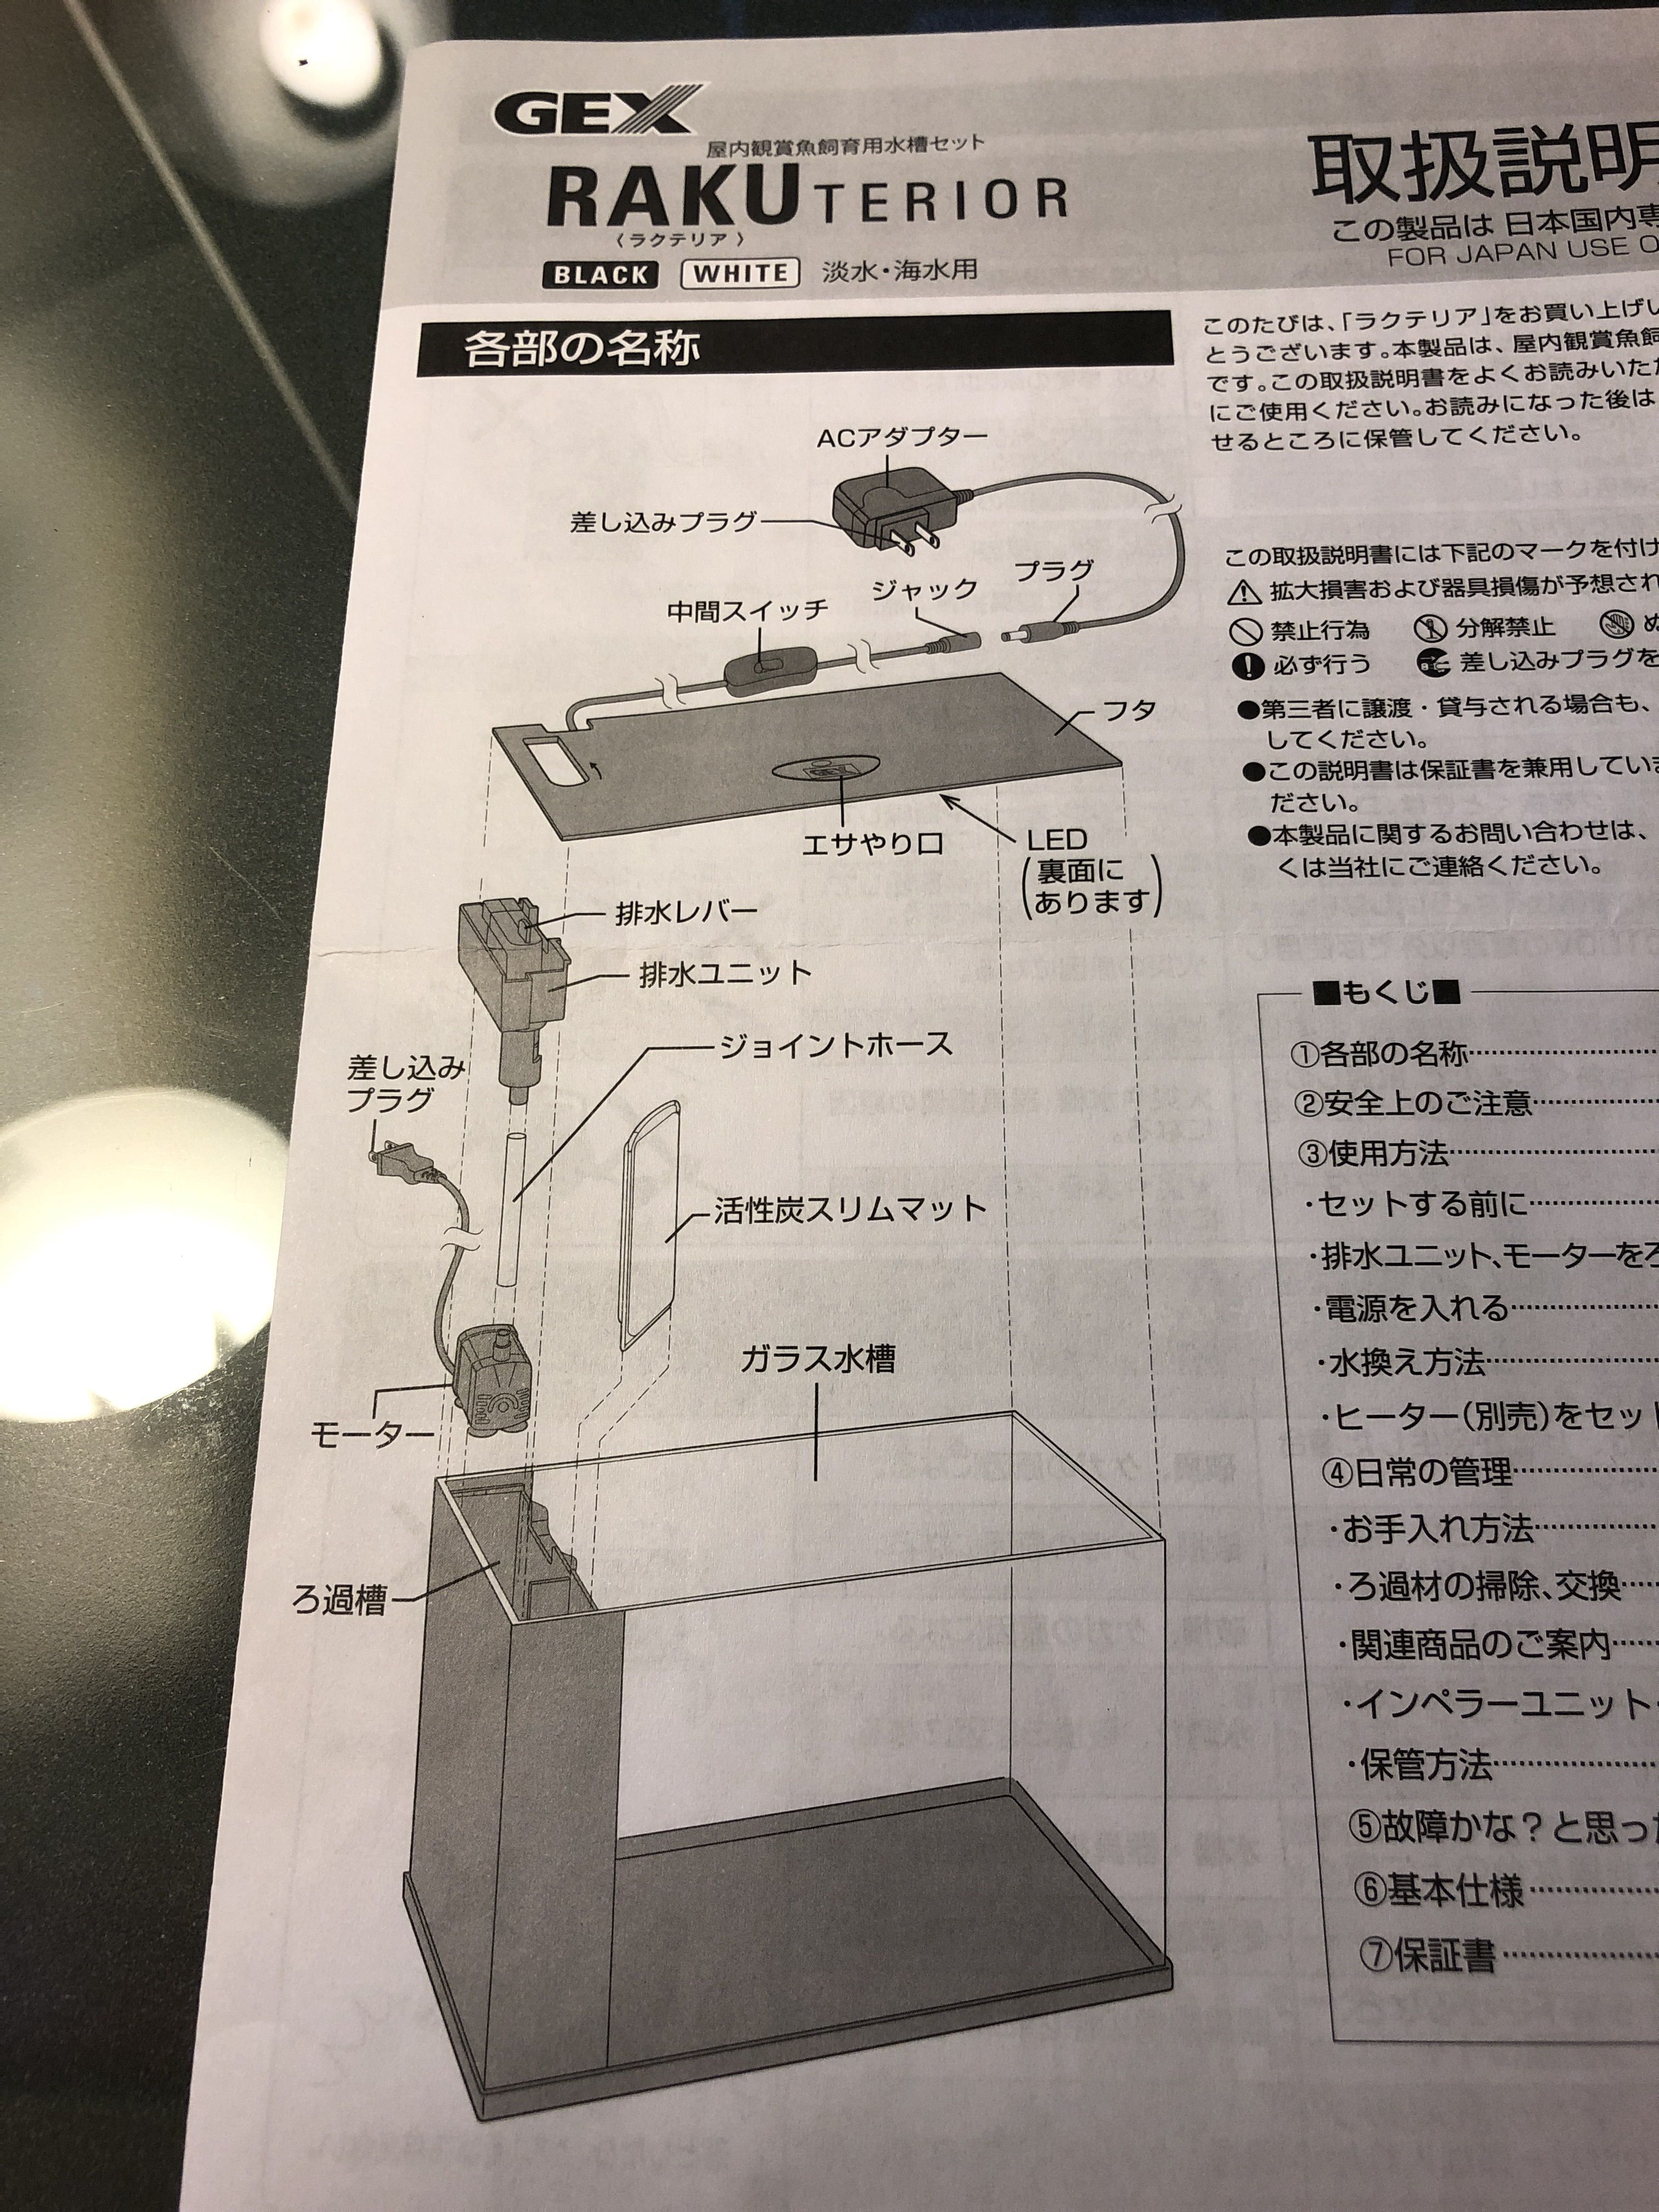 よく読まれている記事一覧 ありえないありえる水槽を作りたい ヲカマの日記 楽天ブログ